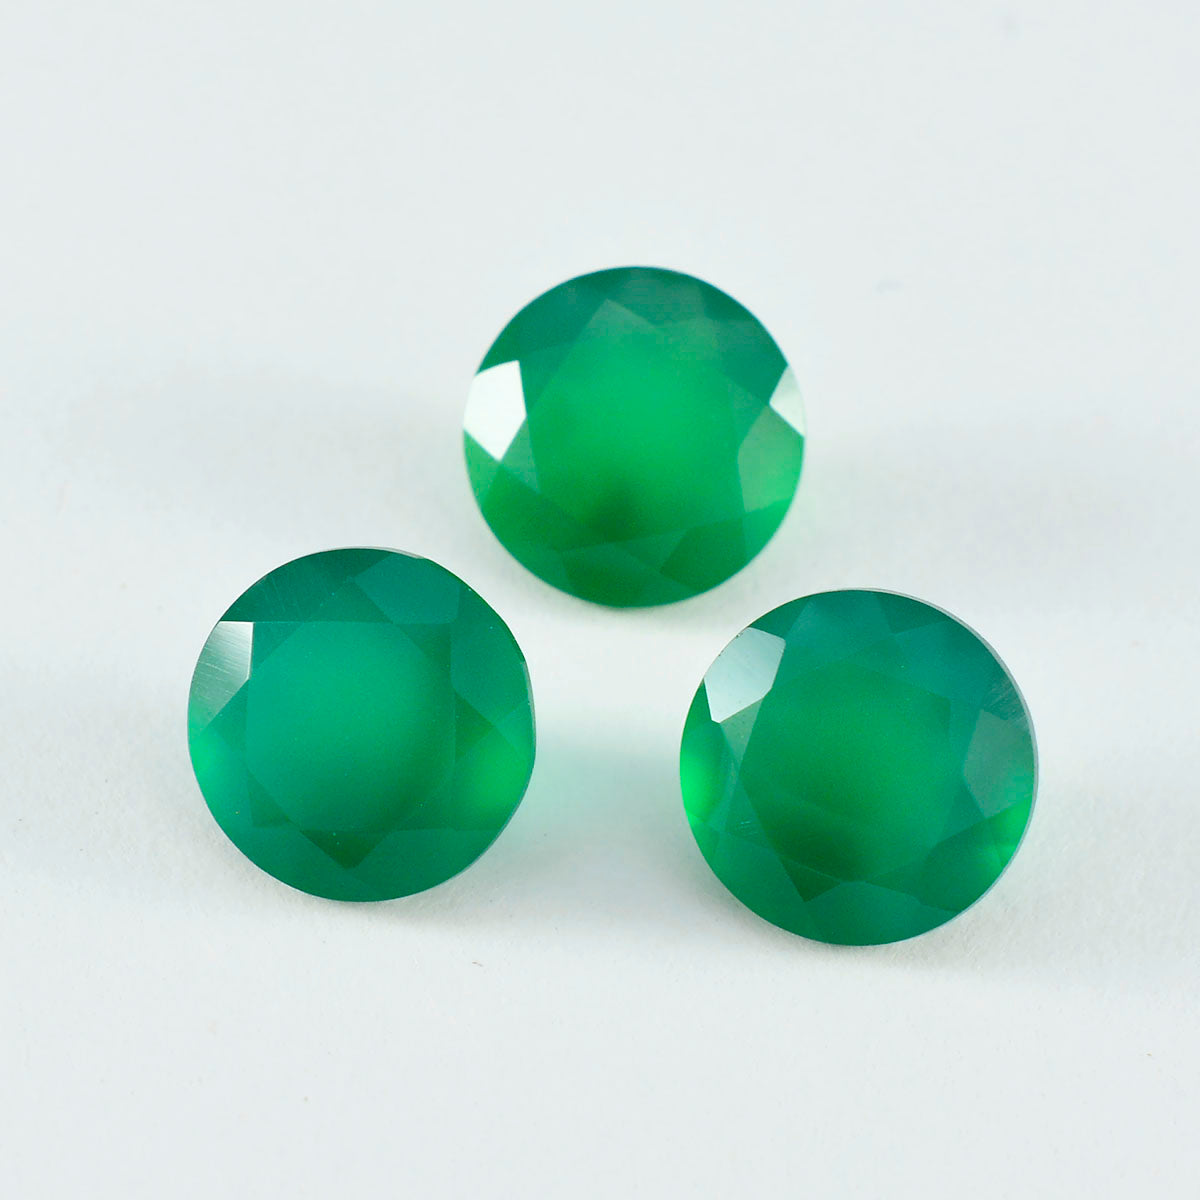 Riyogems, 1 pieza, ónix verde auténtico facetado, 9x9mm, forma redonda, gema suelta de calidad atractiva